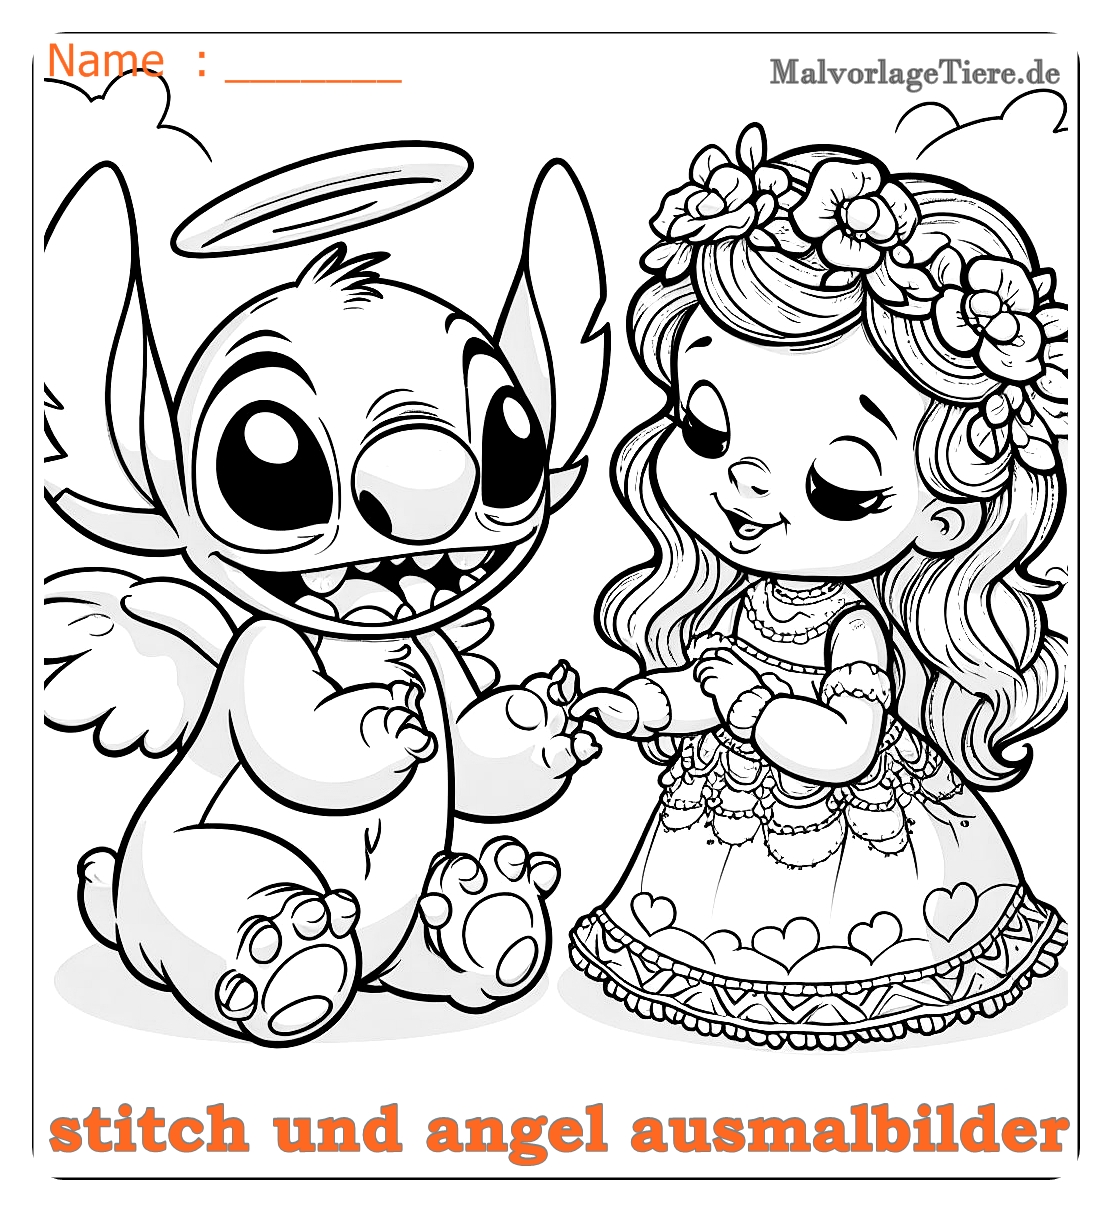 stitch und angel ausmalbilder03 by malvorlagetiere.de